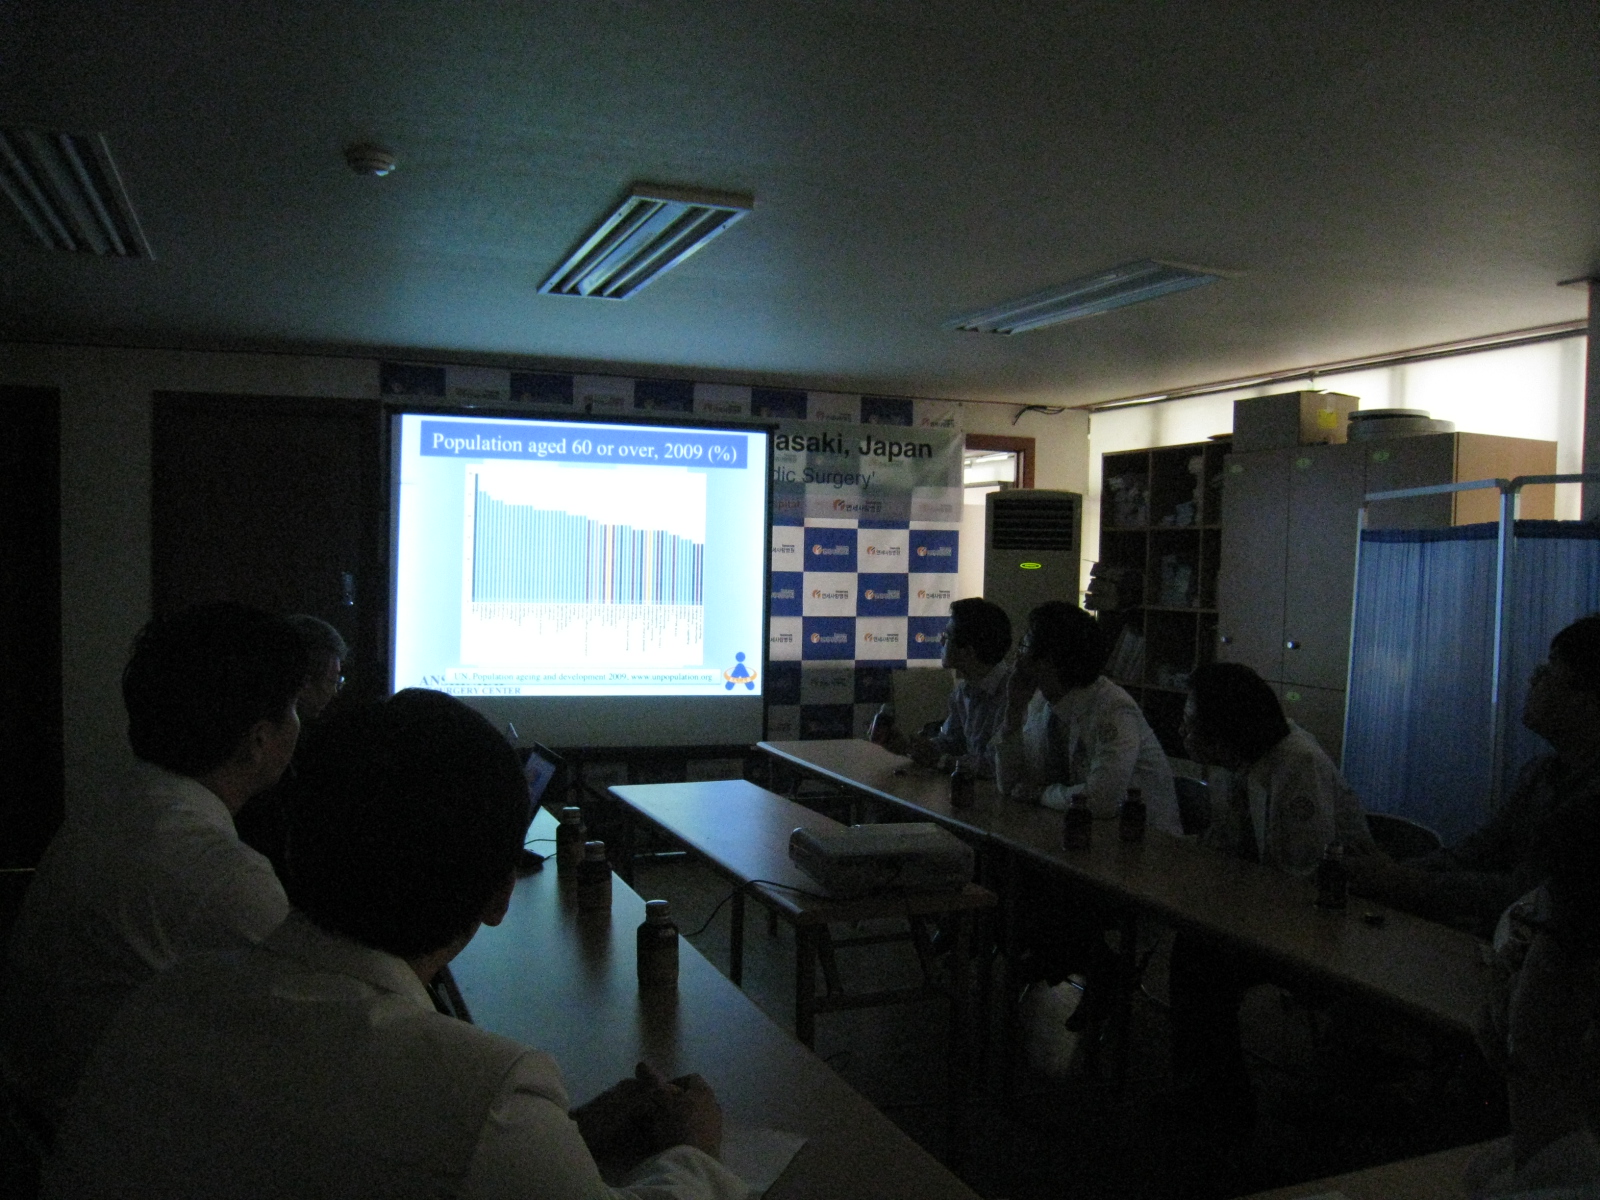 일본 Anshin Clinic 의 의료진 방문 ( Dr. Iwasaki ) 게시글의 2번째 첨부파일입니다.